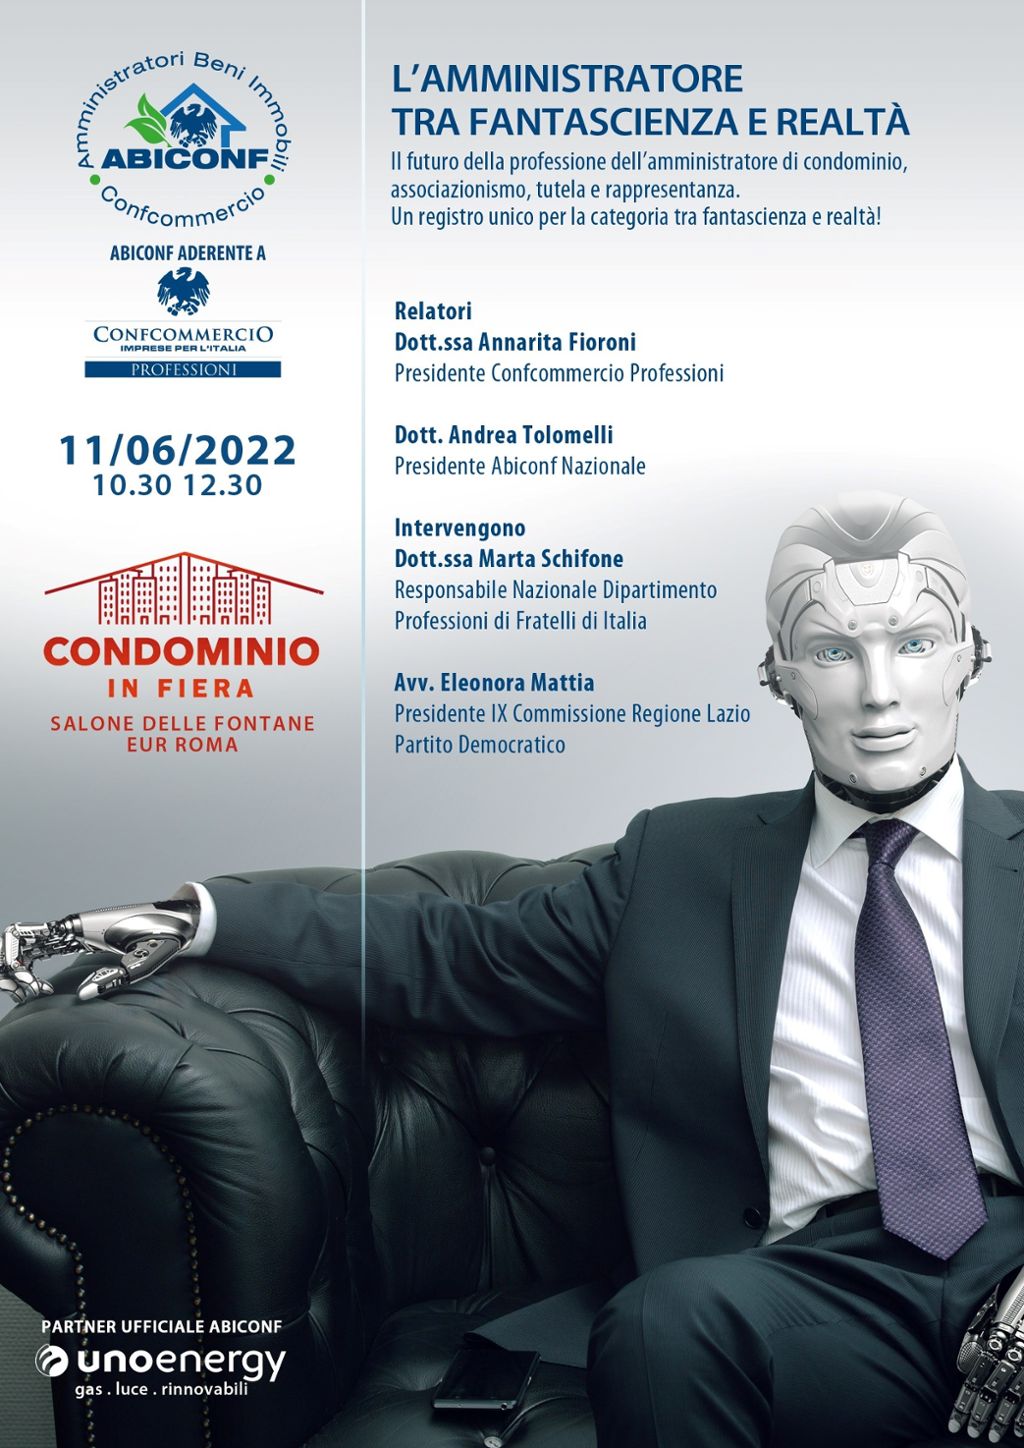 INVITO AD EVENTO ABICONF 11 GIUGNO 2022 - Roma CONDOMINIO IN FIERA